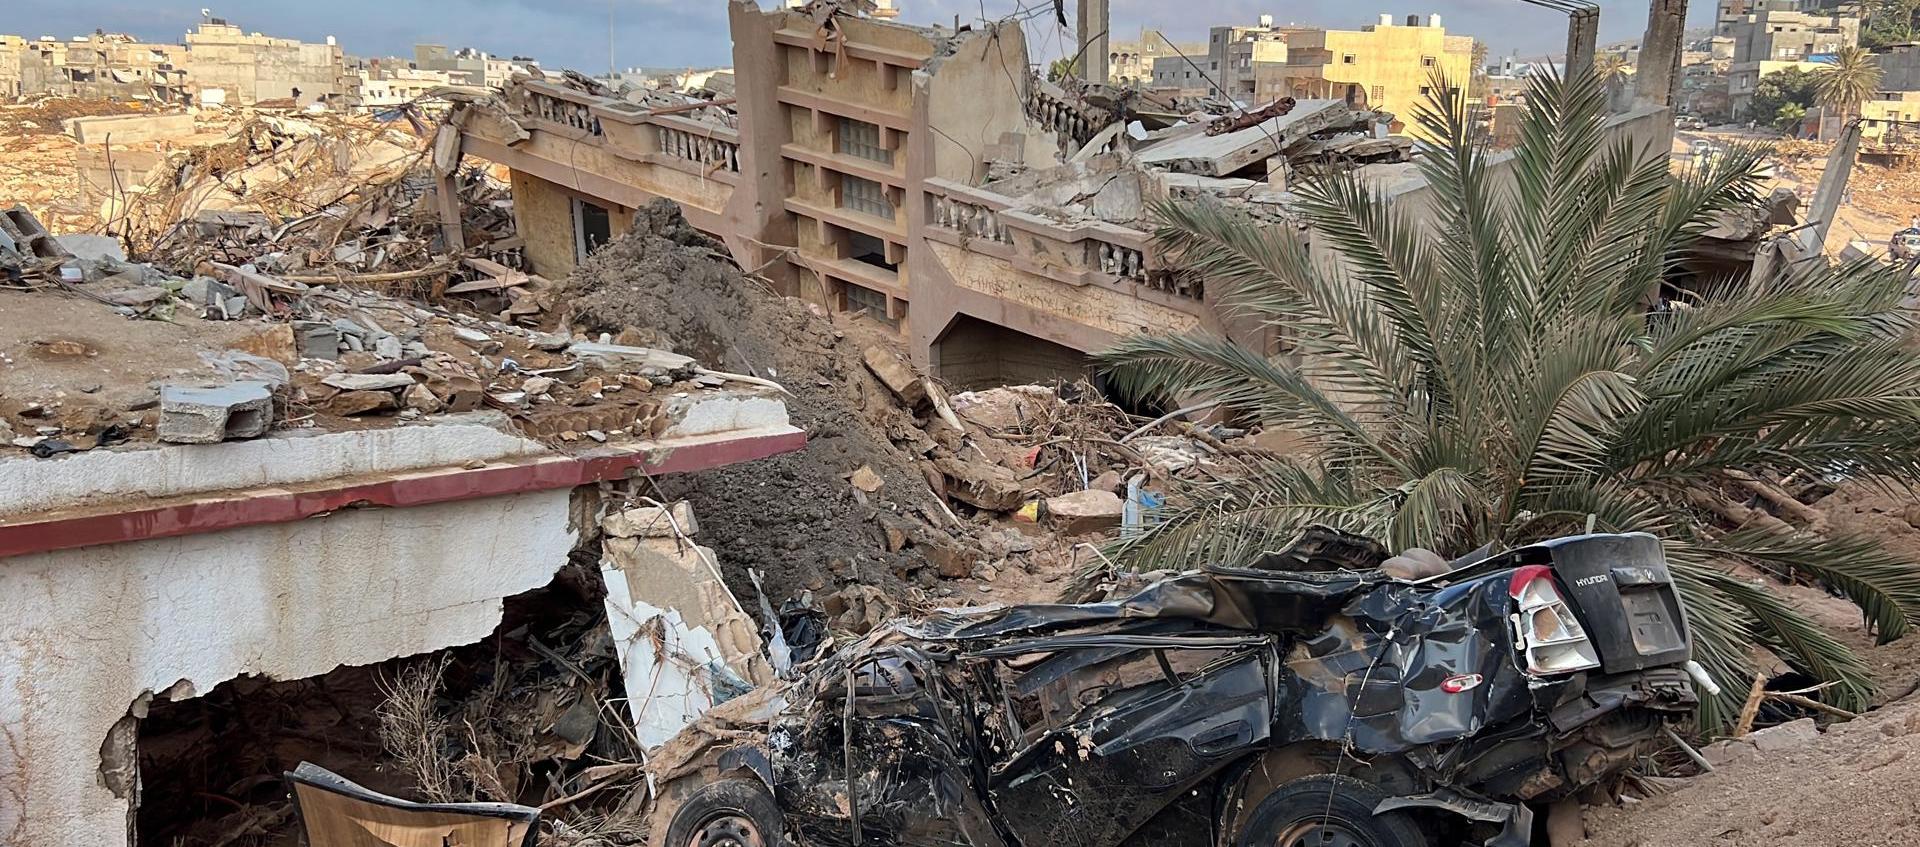 Desastres que dejó el ciclón 'Daniel' en Derna, Libia.